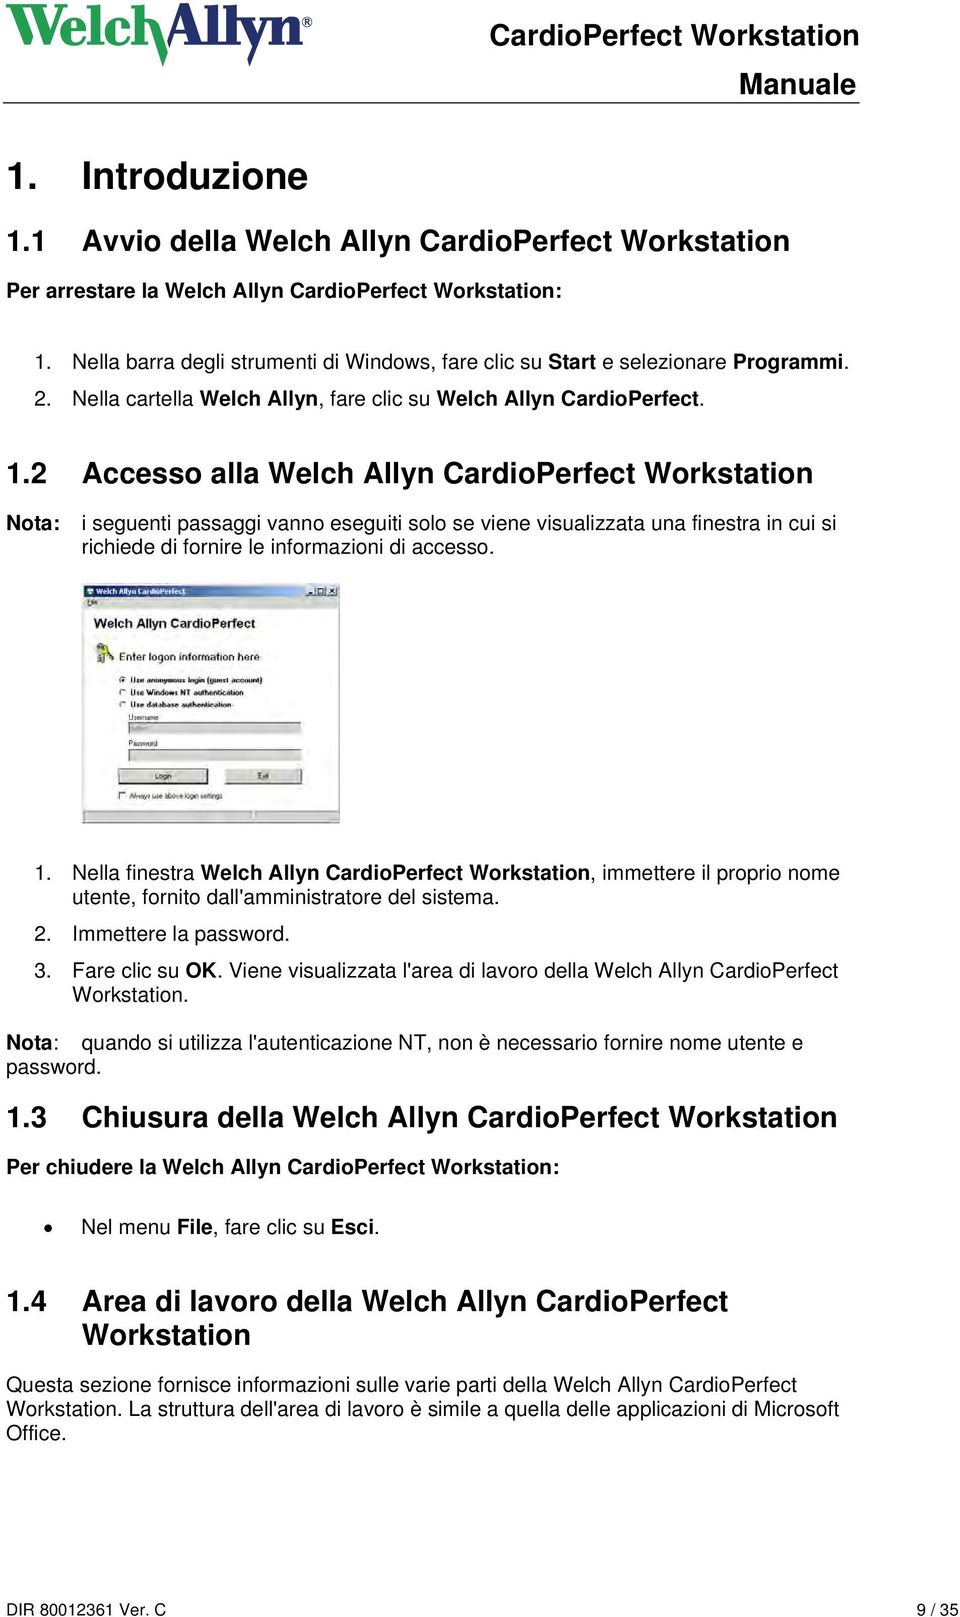 2 Accesso alla Welch Allyn CardioPerfect Workstation Nota: i seguenti passaggi vanno eseguiti solo se viene visualizzata una finestra in cui si richiede di fornire le informazioni di accesso. 1.